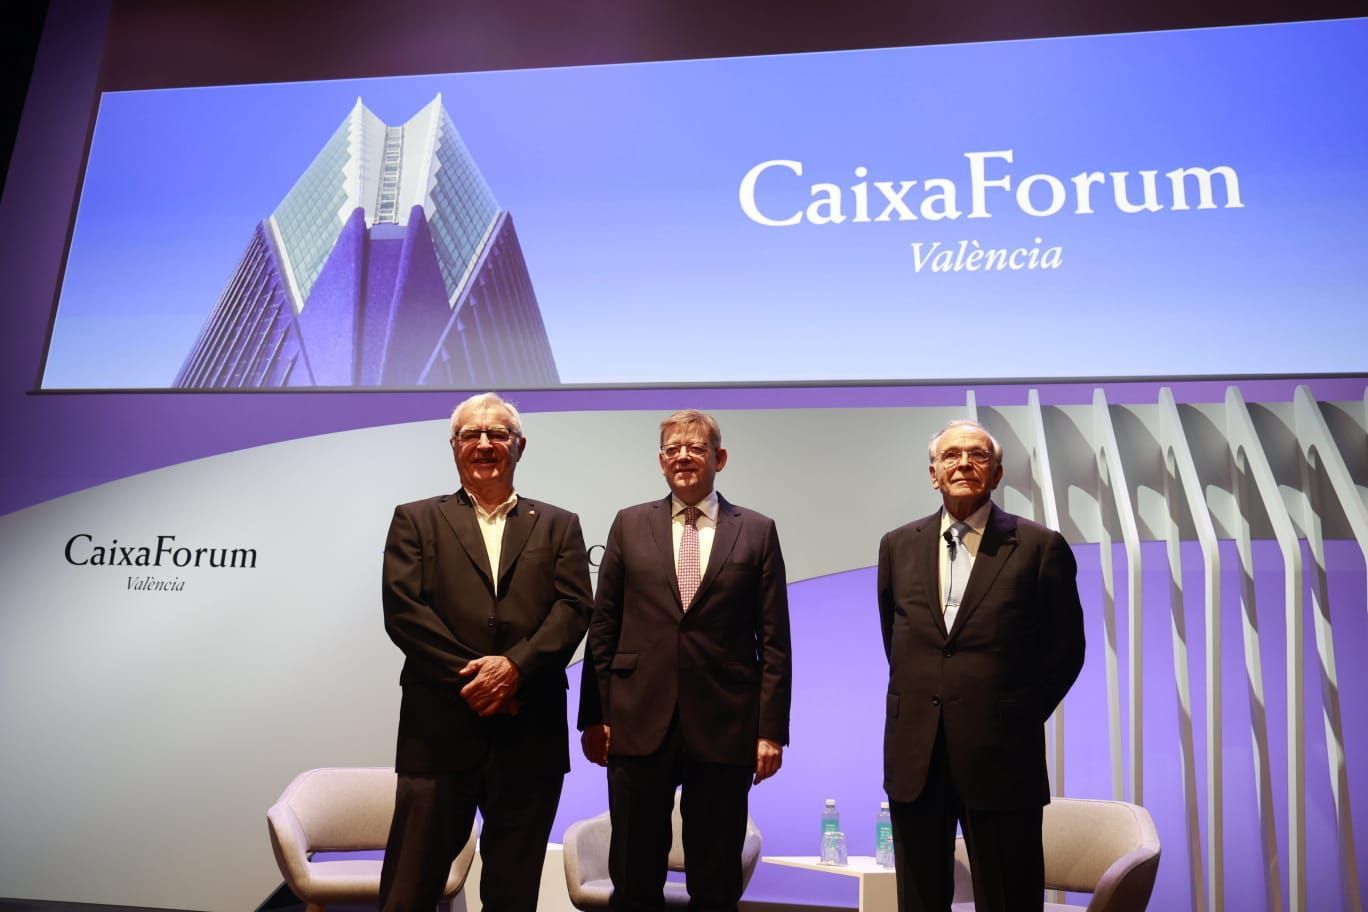 El CaixaForum de Valencia se presenta en sociedad